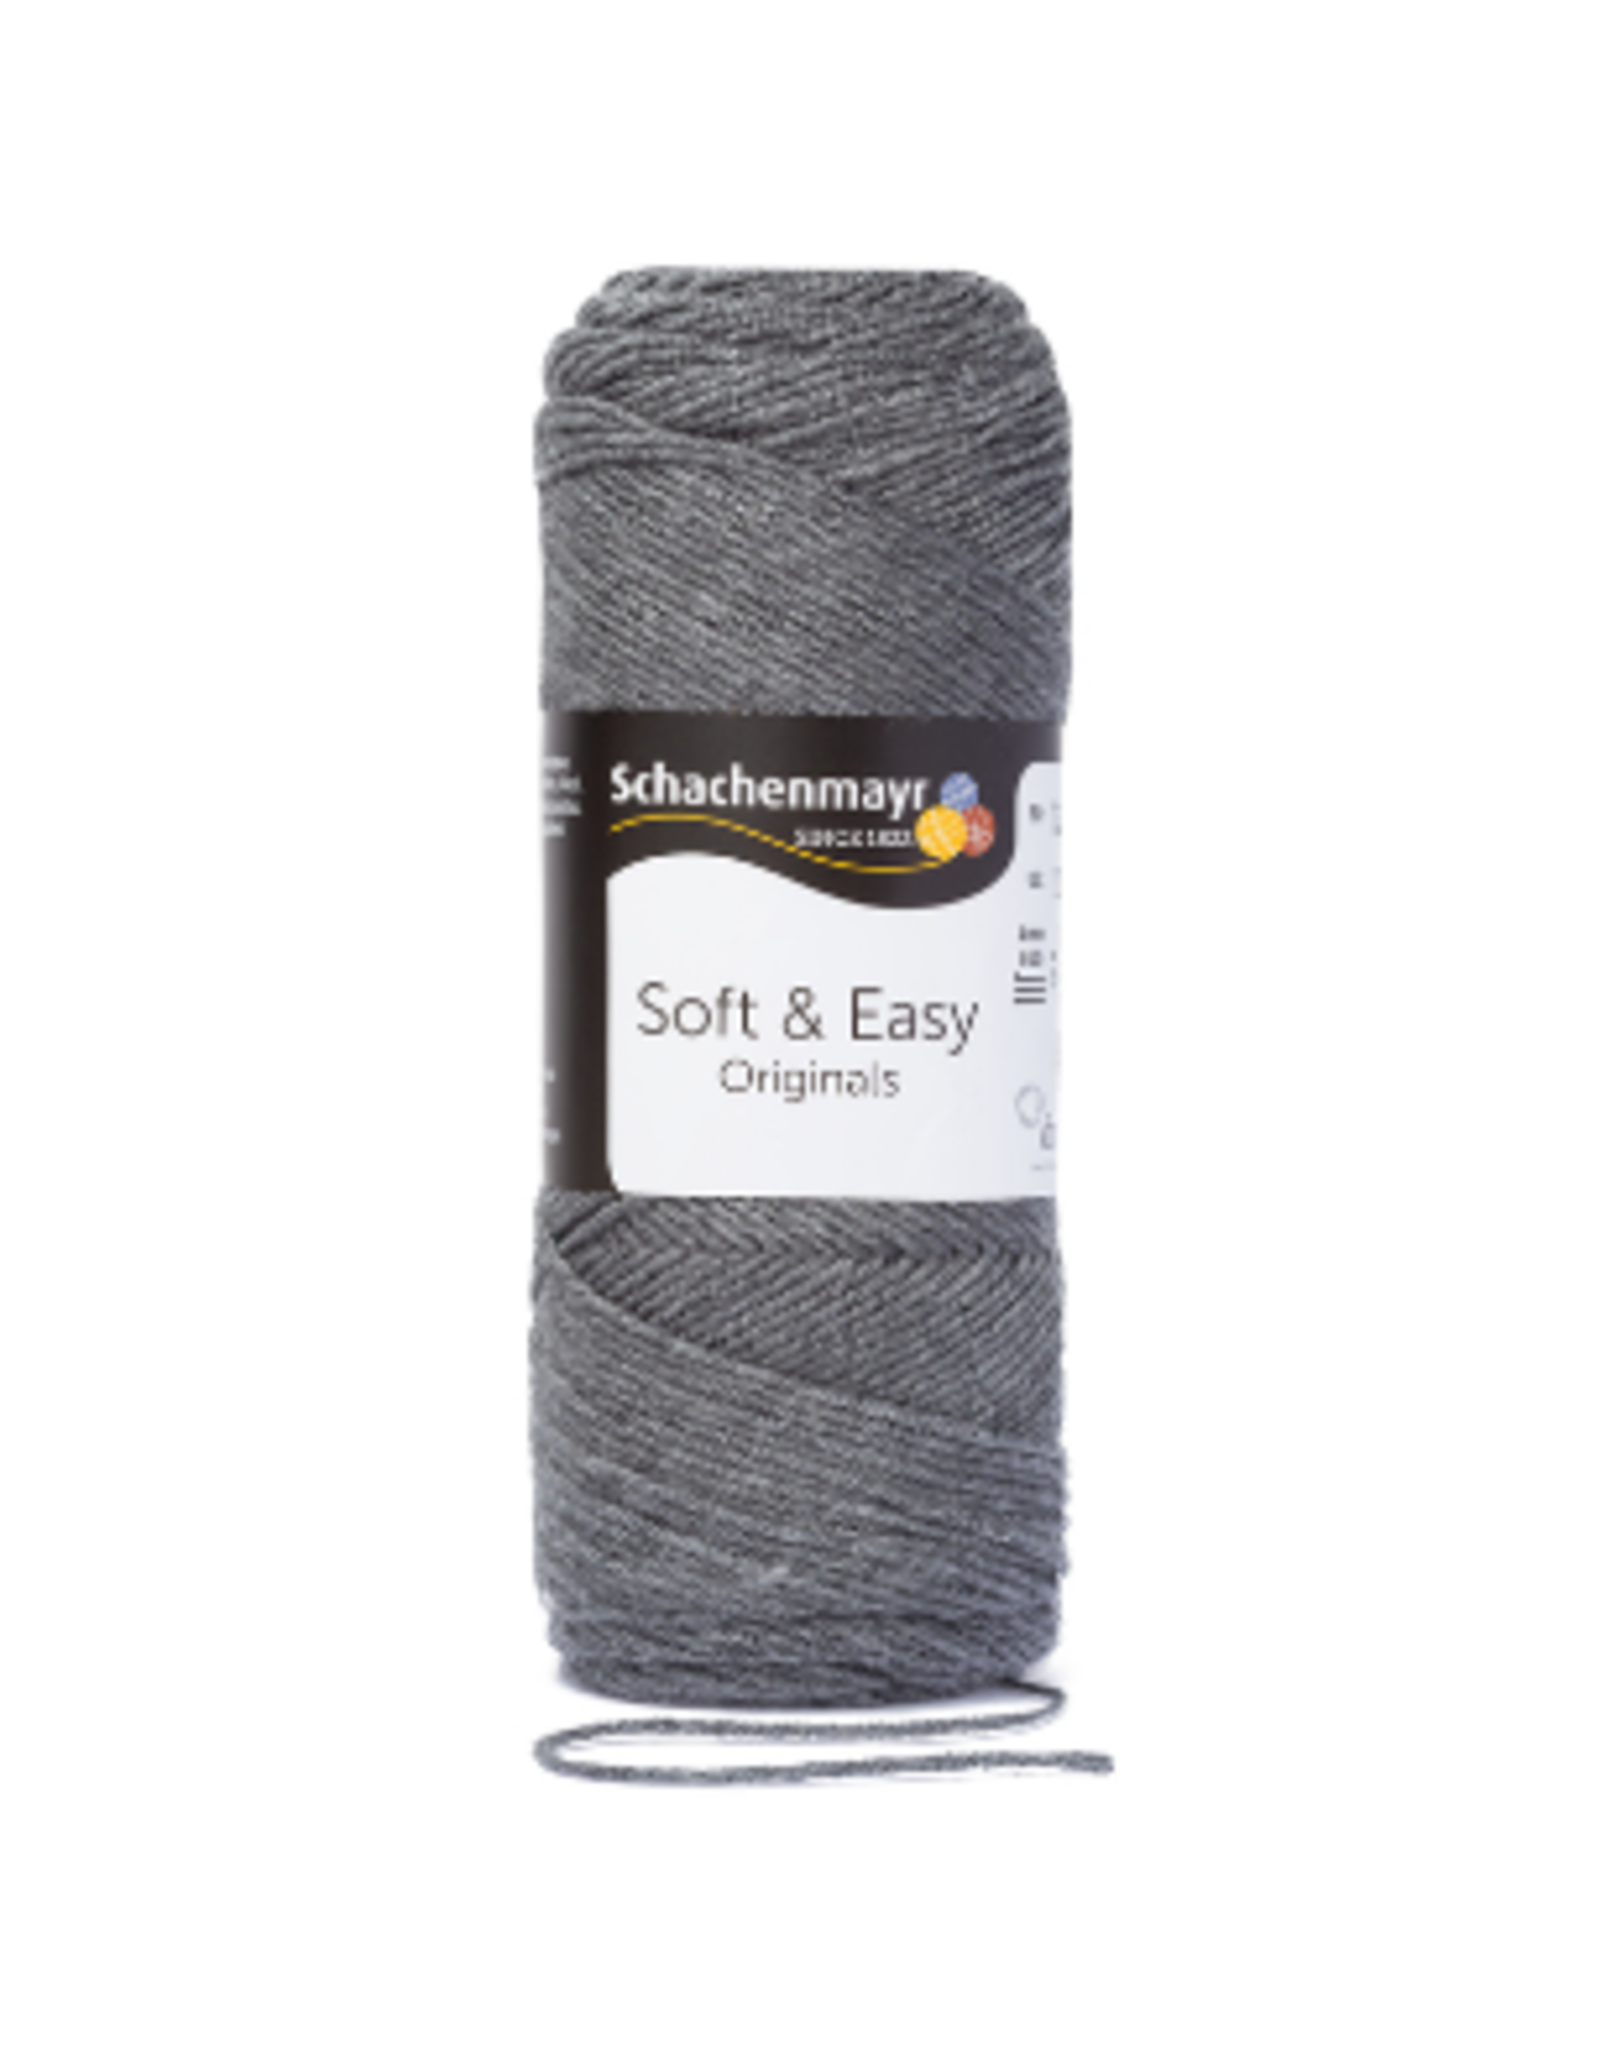 Schachenmayr Schachenmayr Soft & easy 92